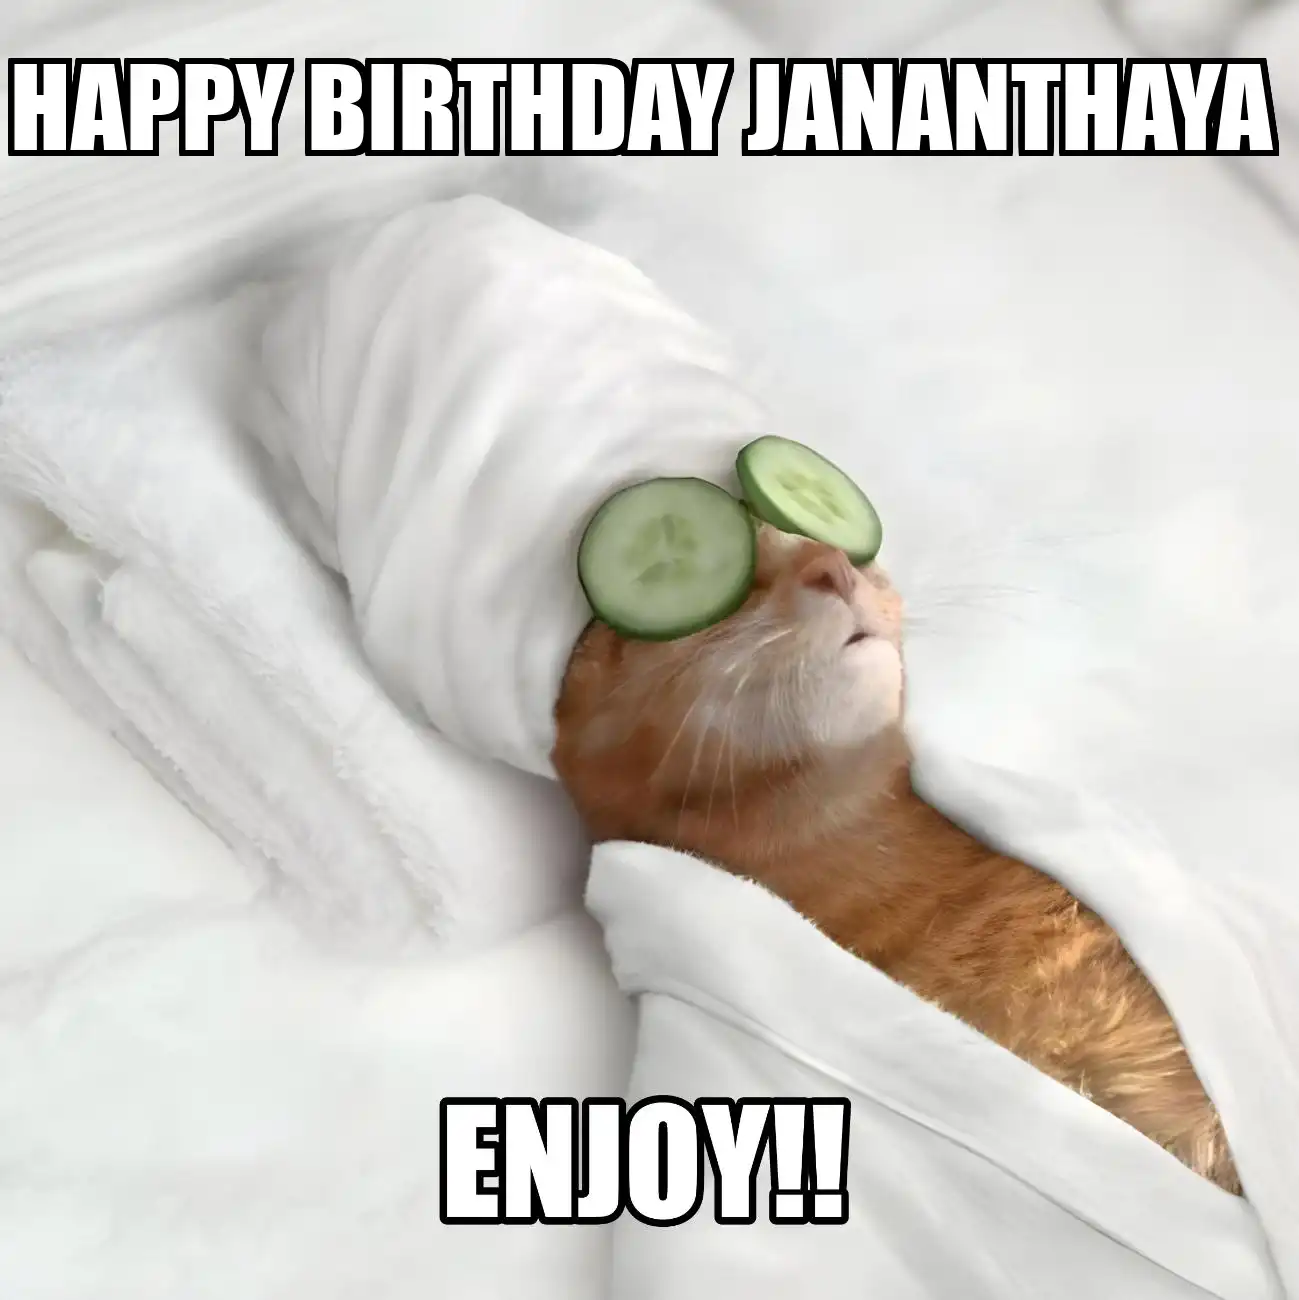 Happy Birthday Jananthaya Enjoy Cat Meme